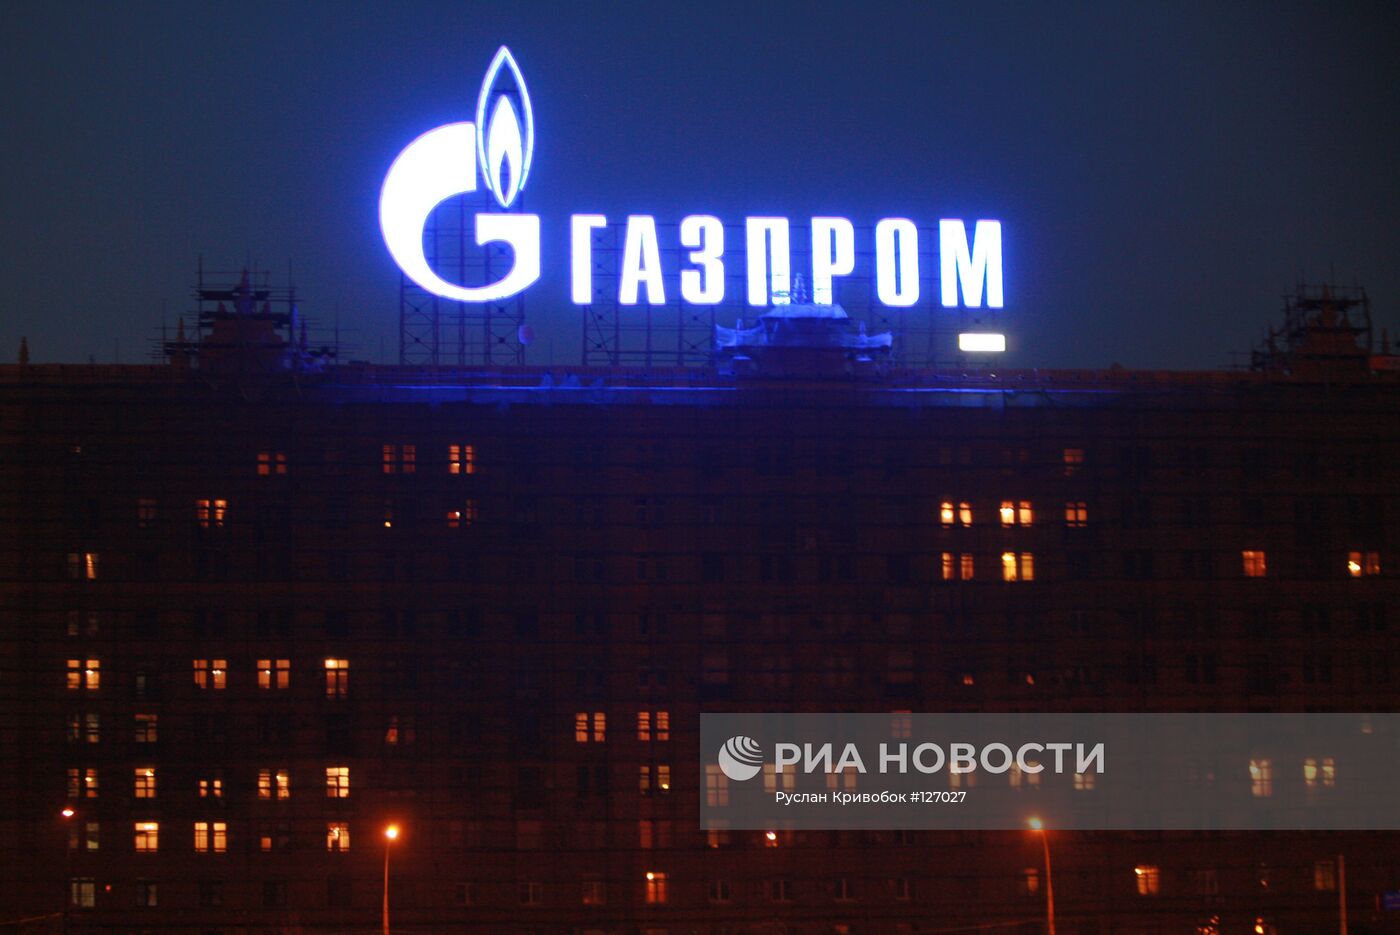 Реклама ОАО "Газпром"